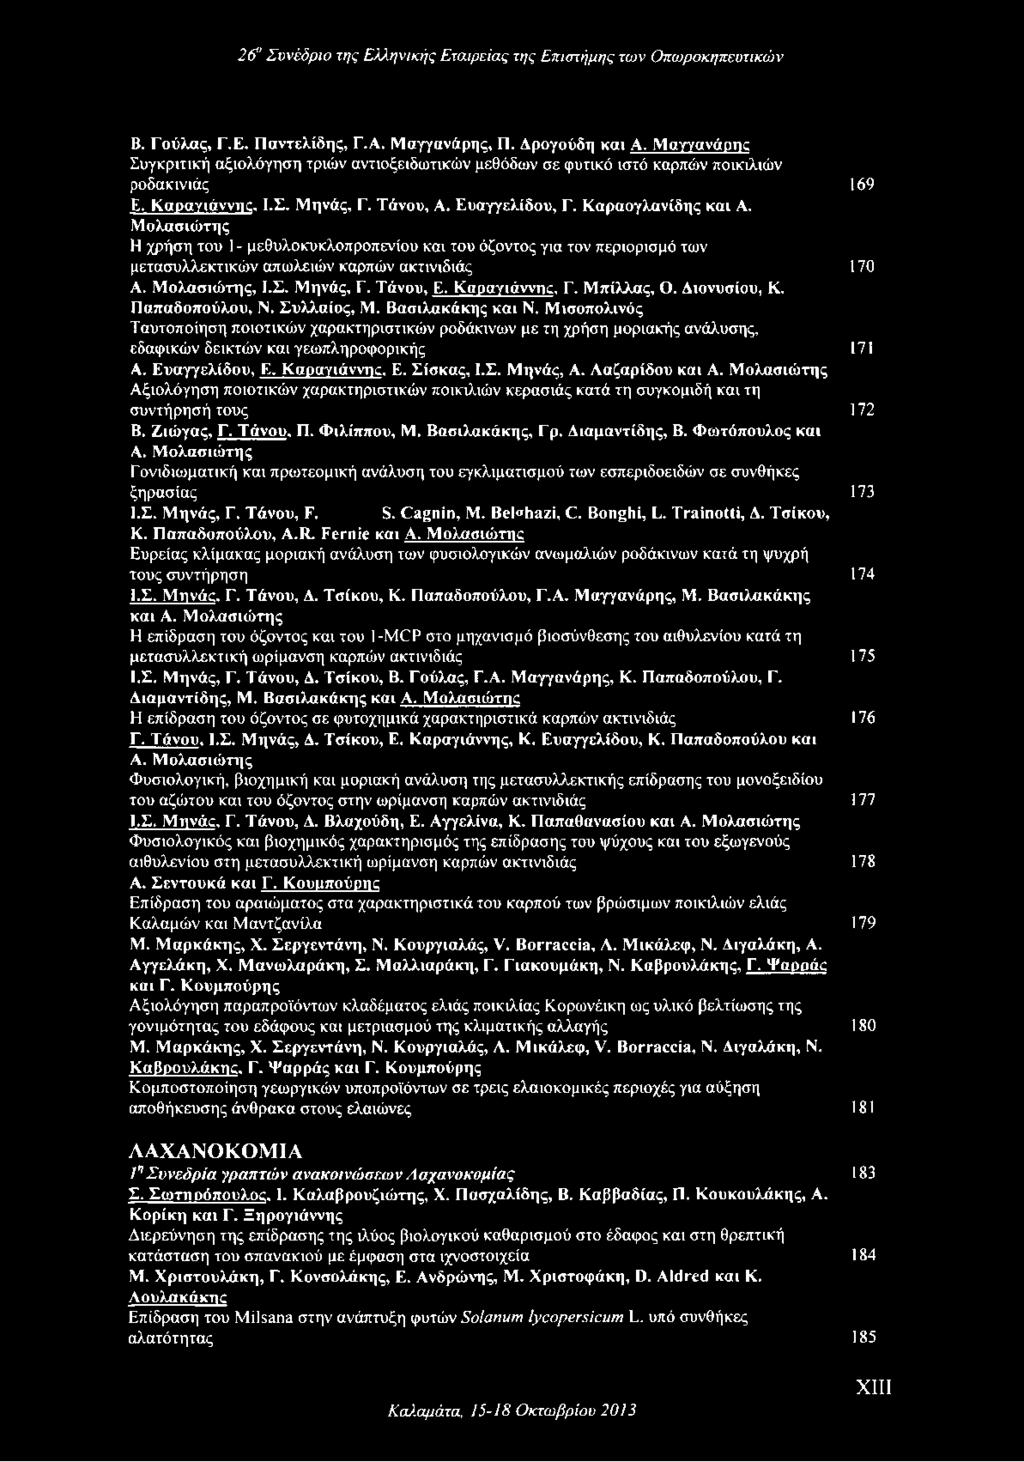 Ααζαρίδου και Α. Μολασιώτης Αξιολόγηση ποιοτικών χαρακτηριστικών ποικιλιών κερασιάς κατά τη συγκομιδή και τη συντήρησή τους 172 Β. Ζιώγας, Γ. Τάνου, Π. Φιλίππου, Μ. Βασιλακάκης, Γρ. Αιαμαντίδης, Β.